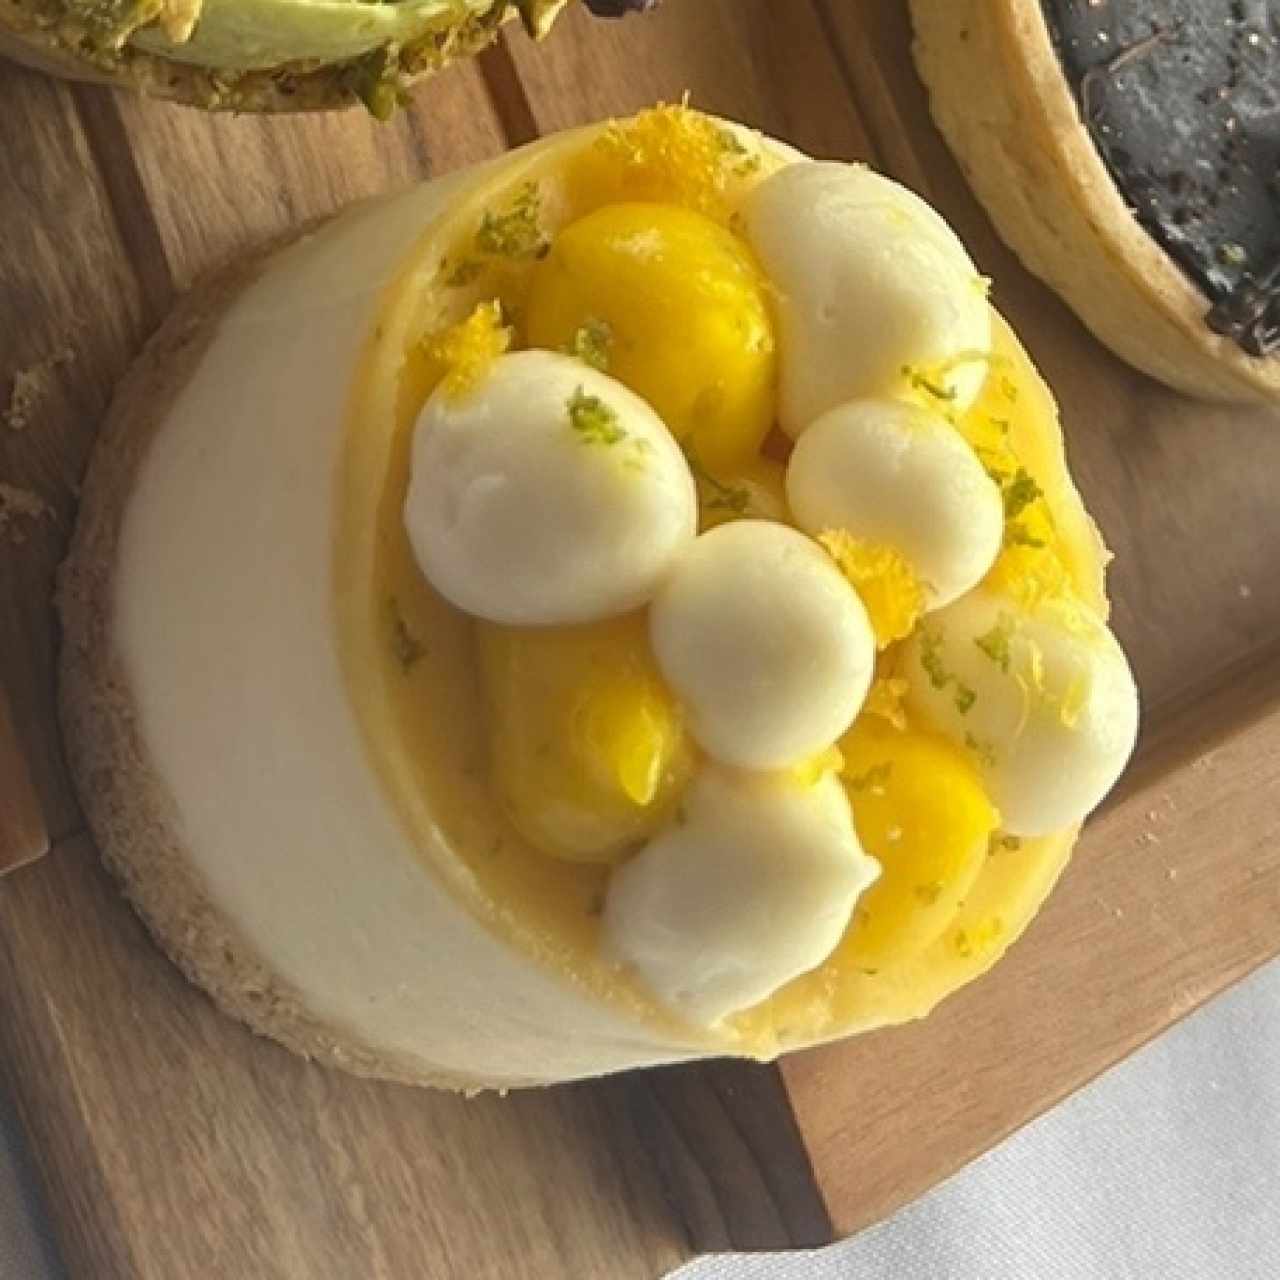 Cheesecake de limón